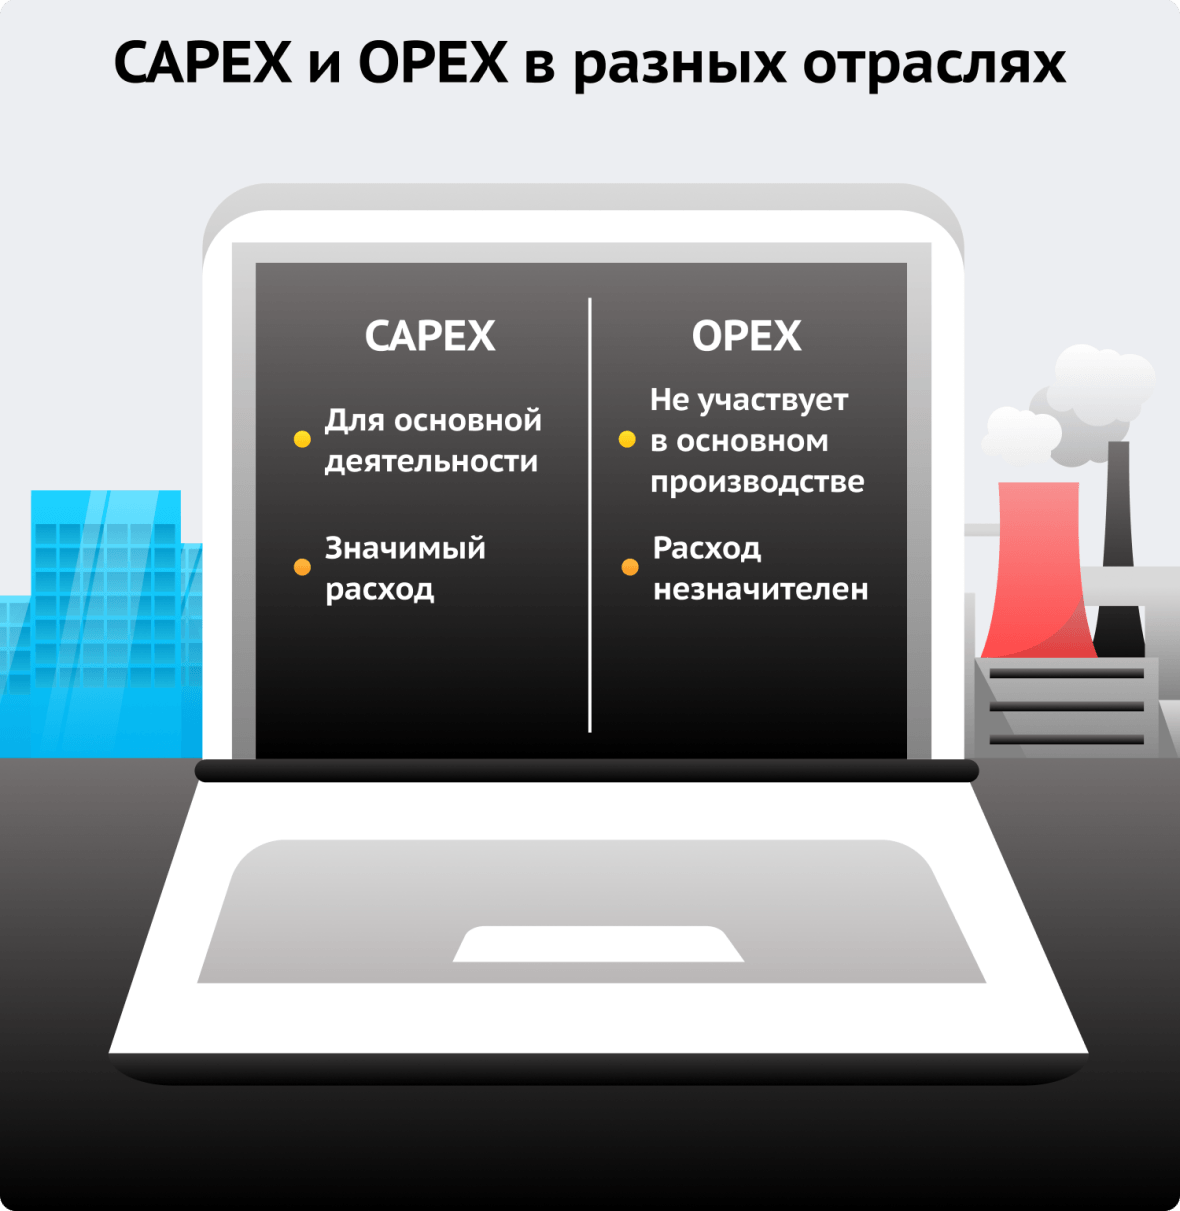 CAPEX и OPEX в разных отраслях